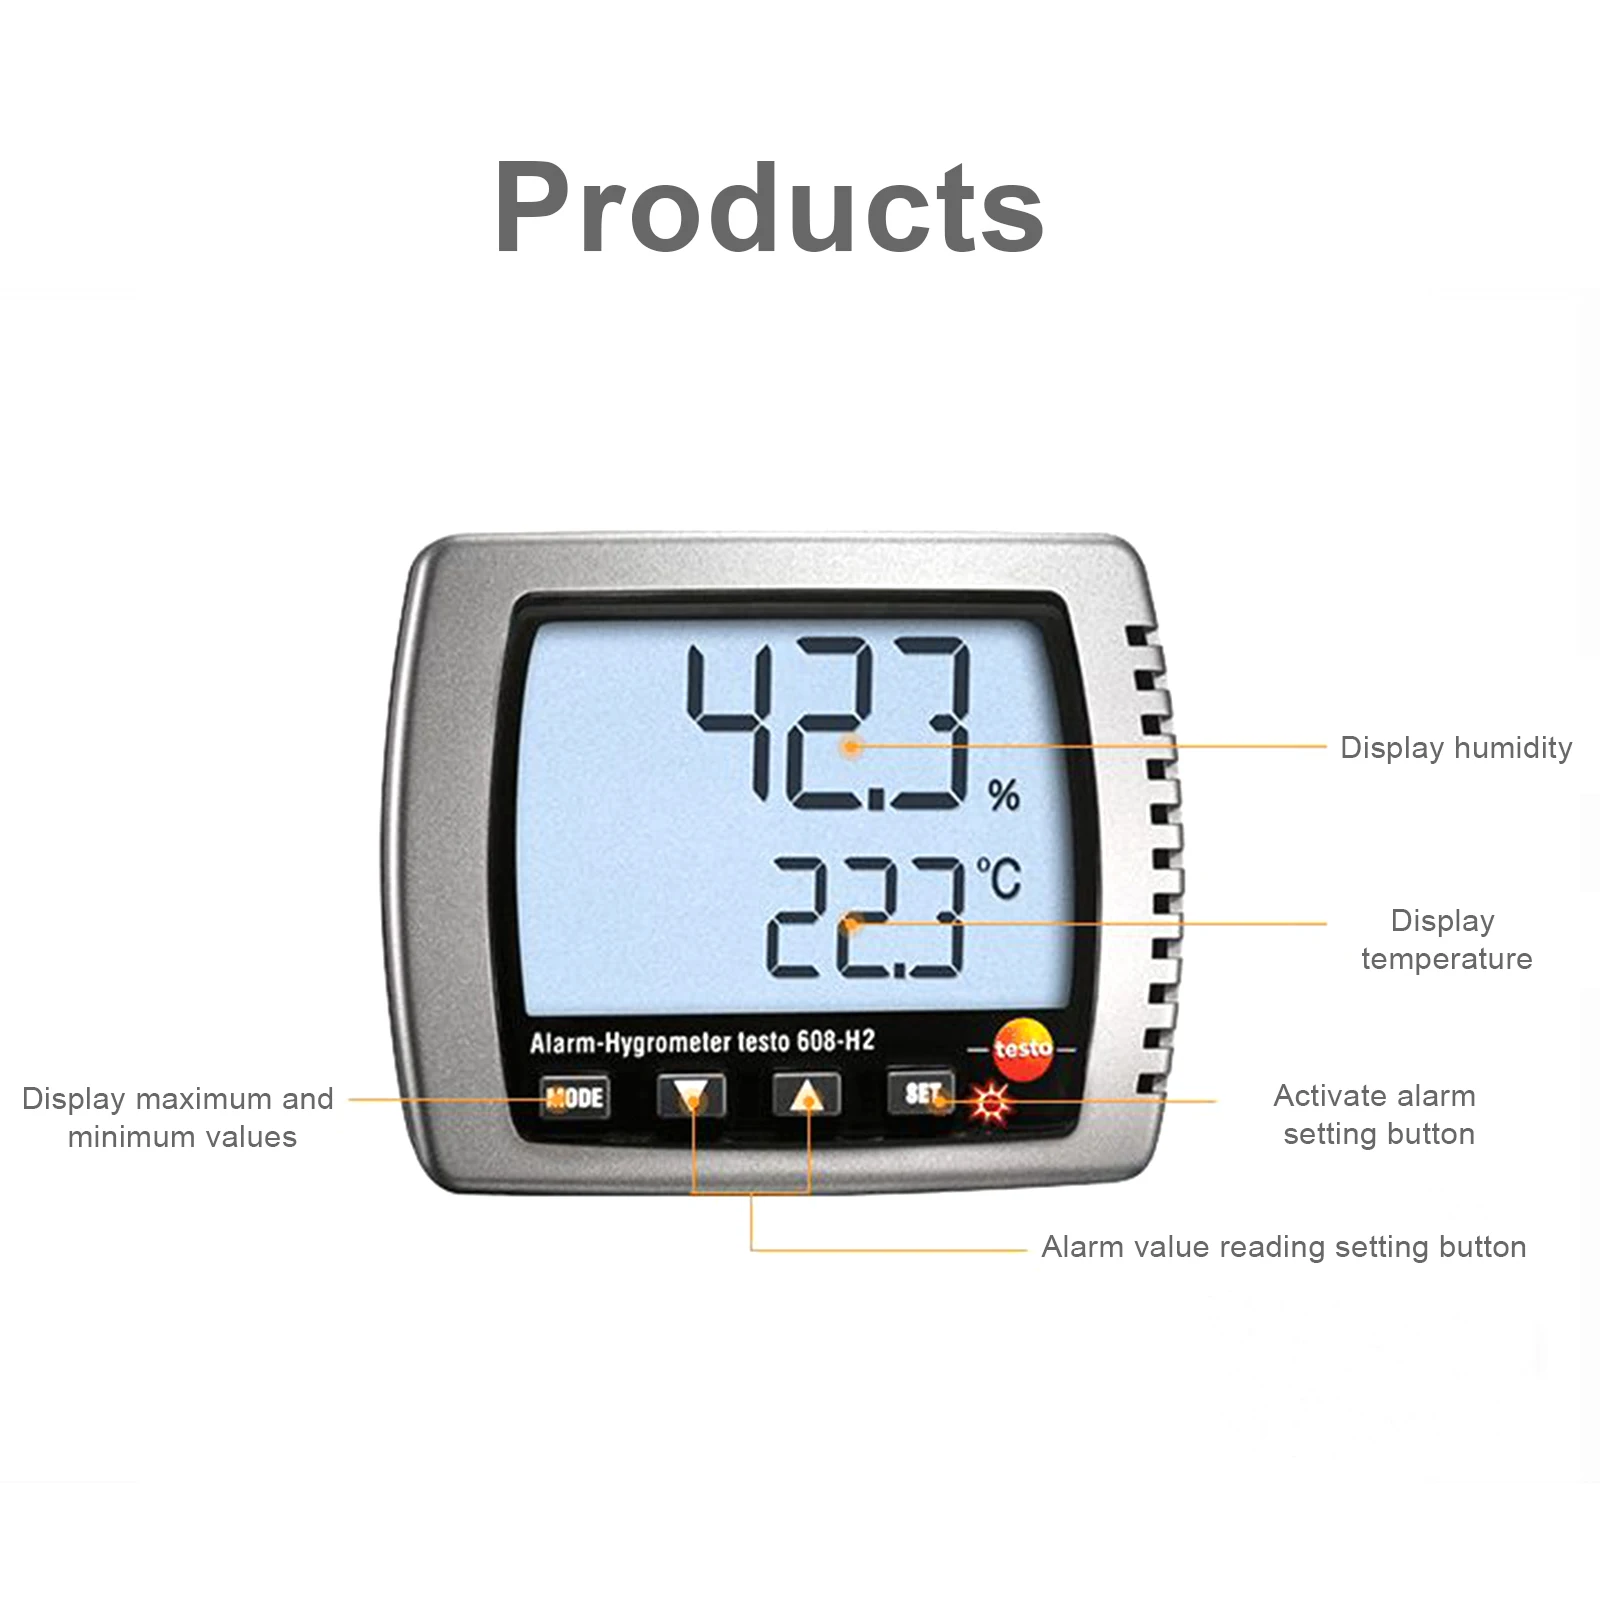 Измерения температуры и влажности воздуха. Гигрометр testo 608-h. Testo 608-h1. Тесто 608 н1 термогигрометр. Цифровой термогигрометр testo 608-h1.